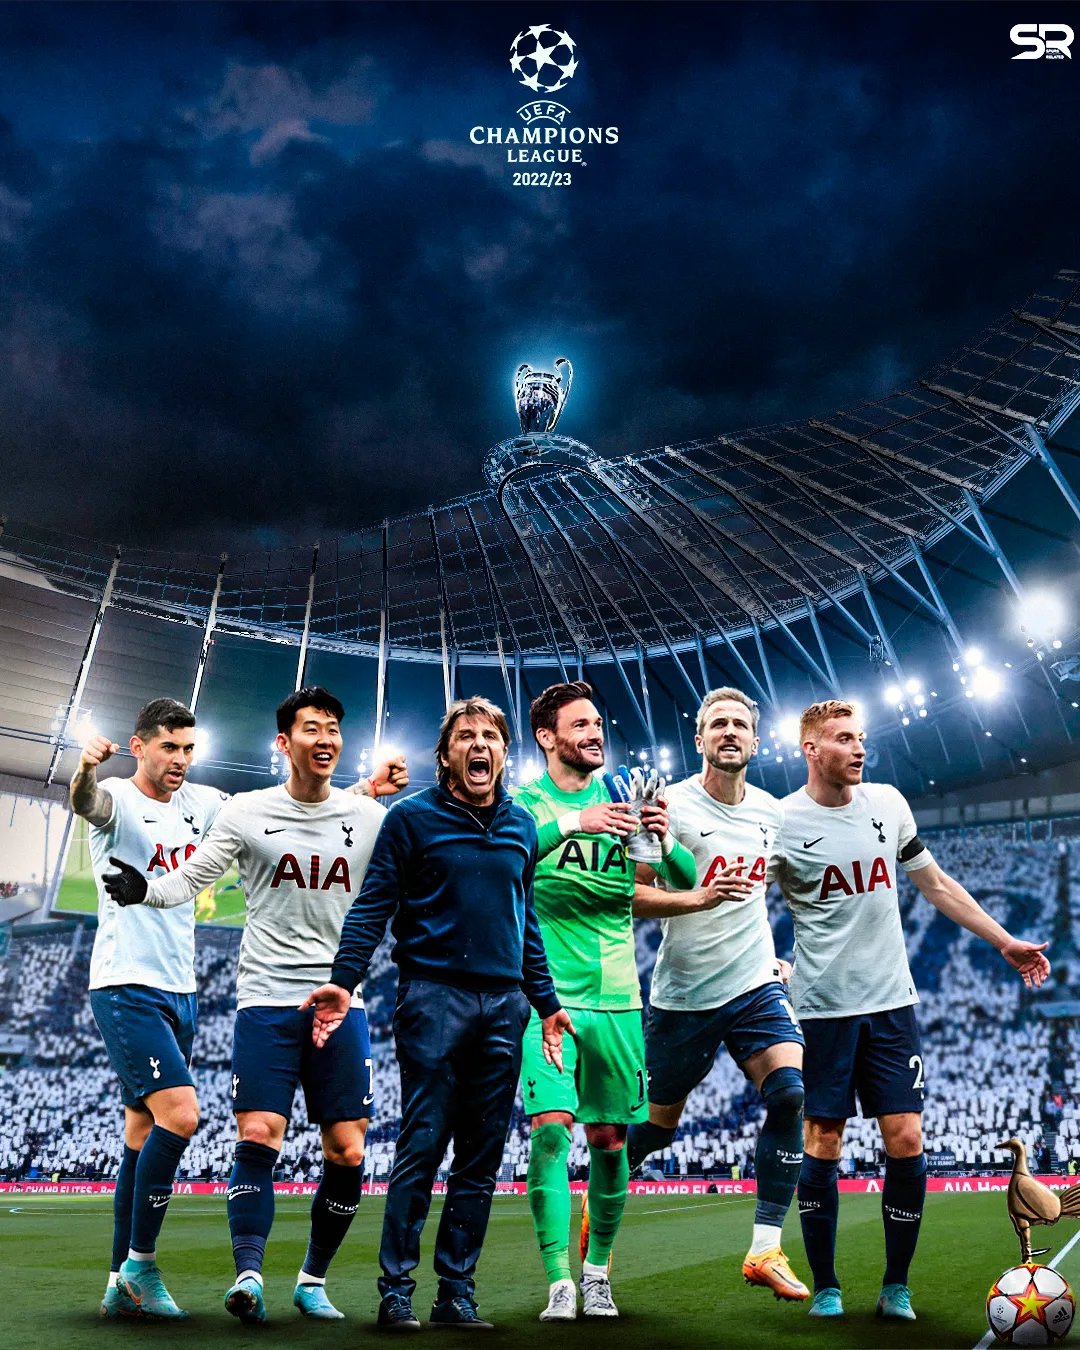 my team | Tottenham hotspur wallpaper, Tottenham hotspur, Desktop wallpapers  backgrounds